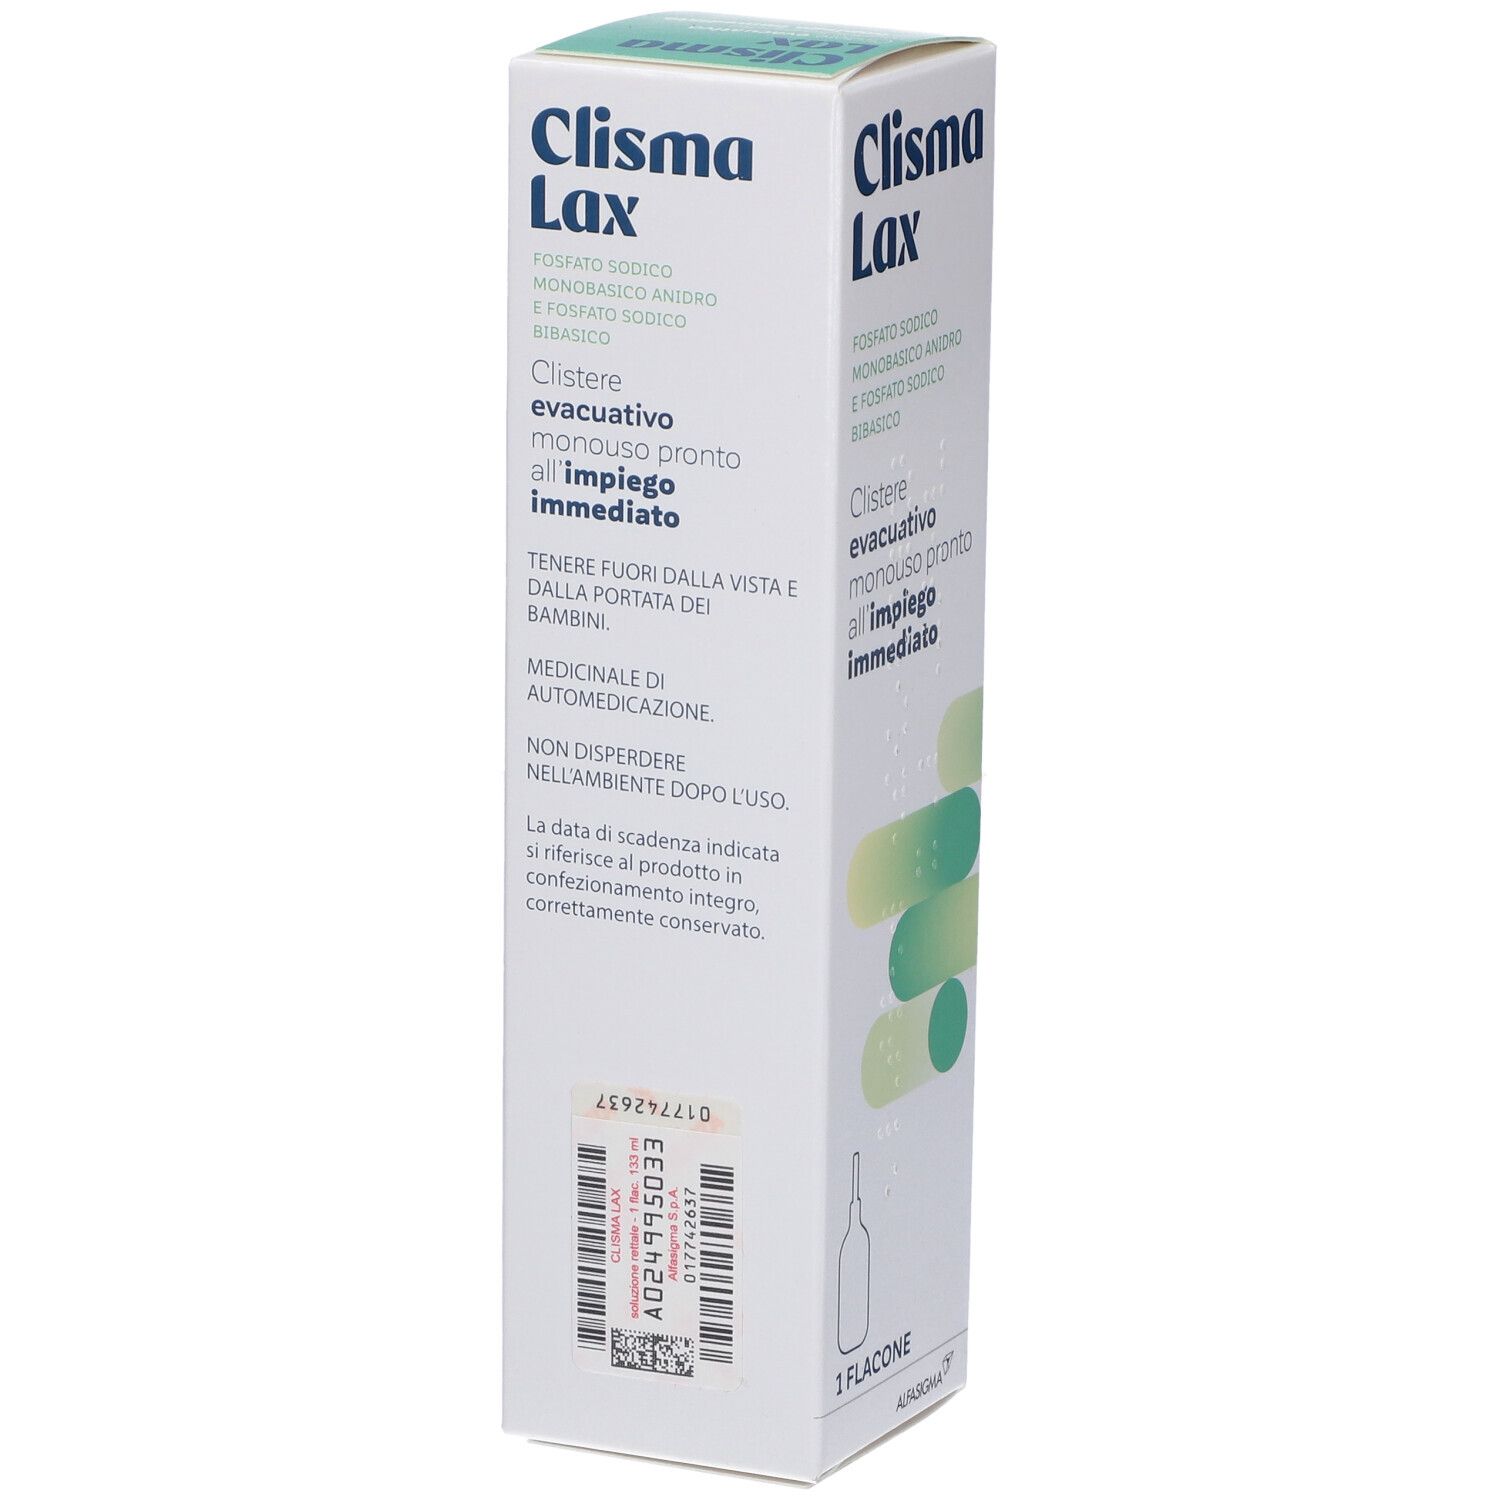 Clisma Lax Soluzione Rettale 1 flacone da 133 ml